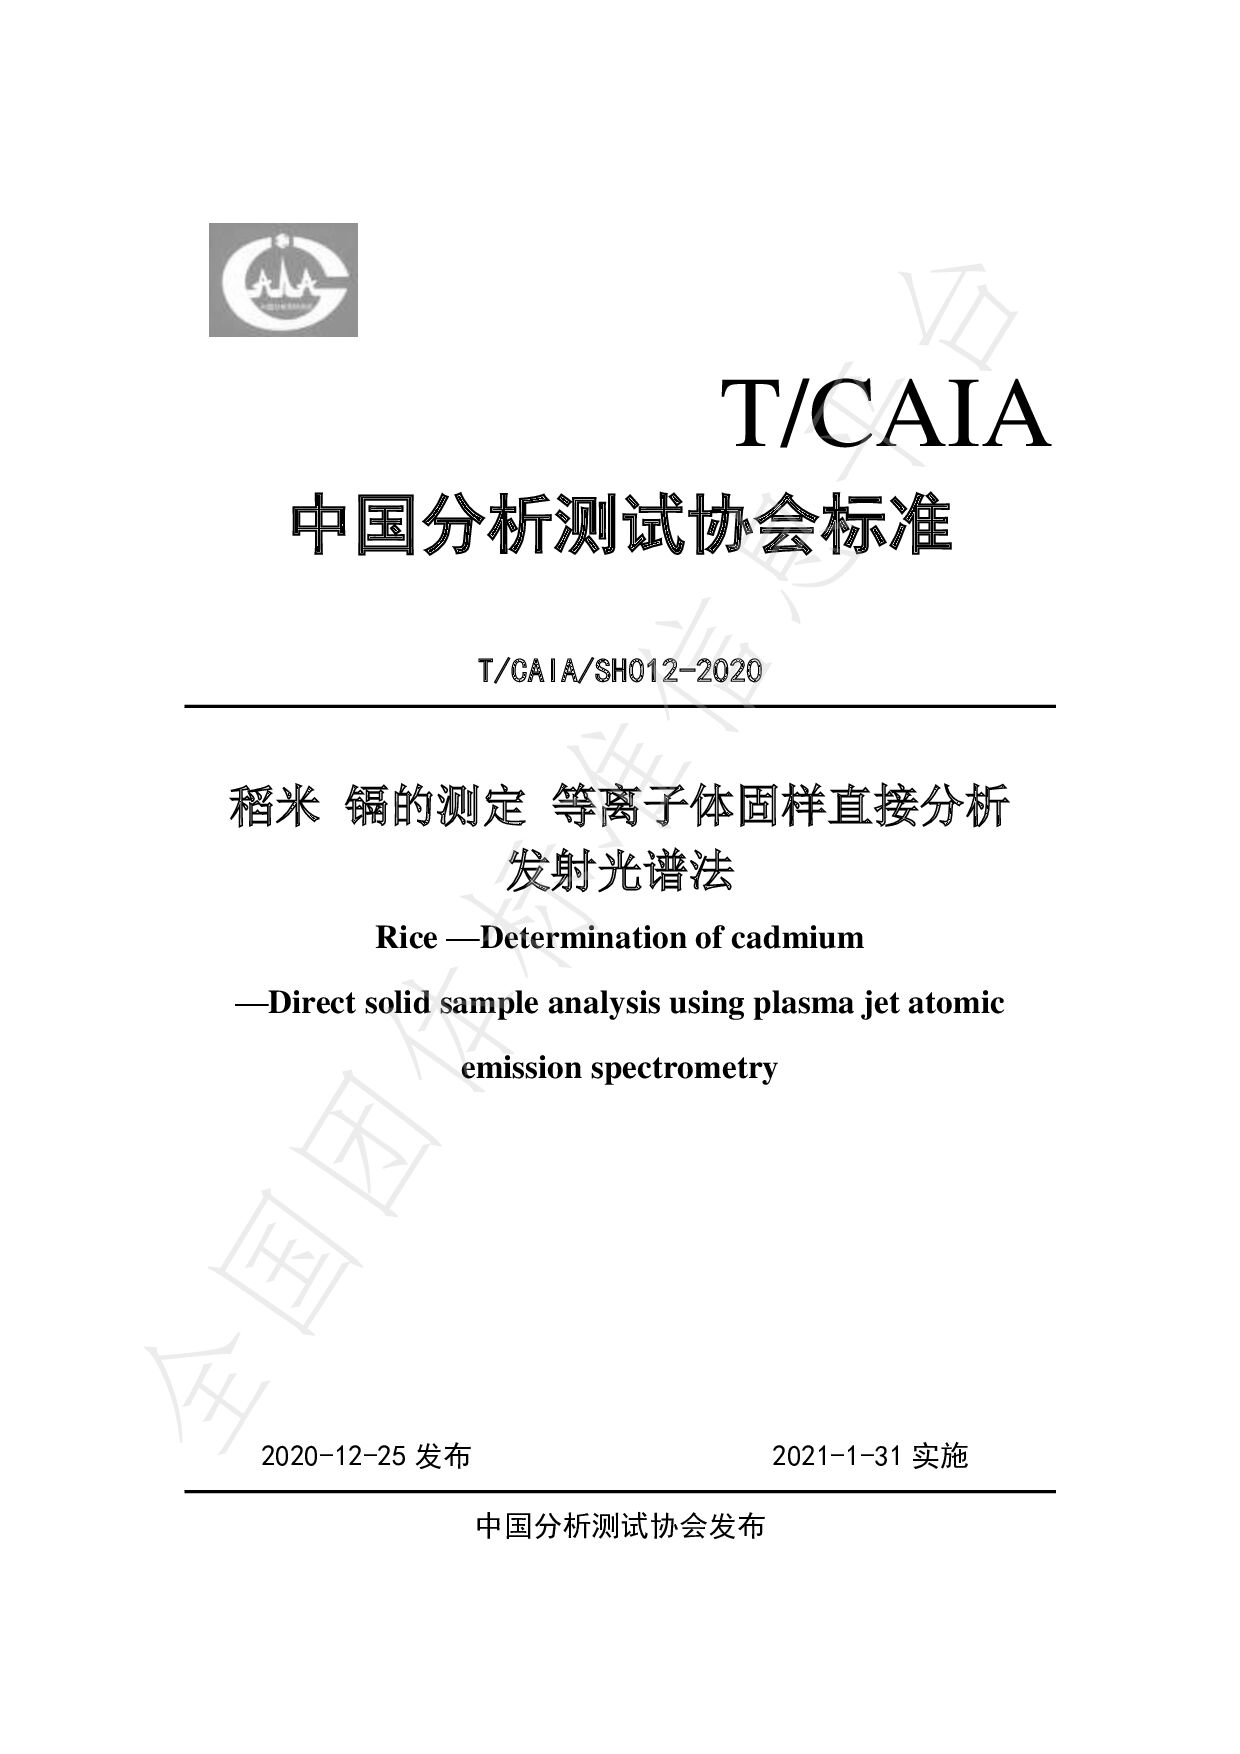 T/CAIA SH012—2020